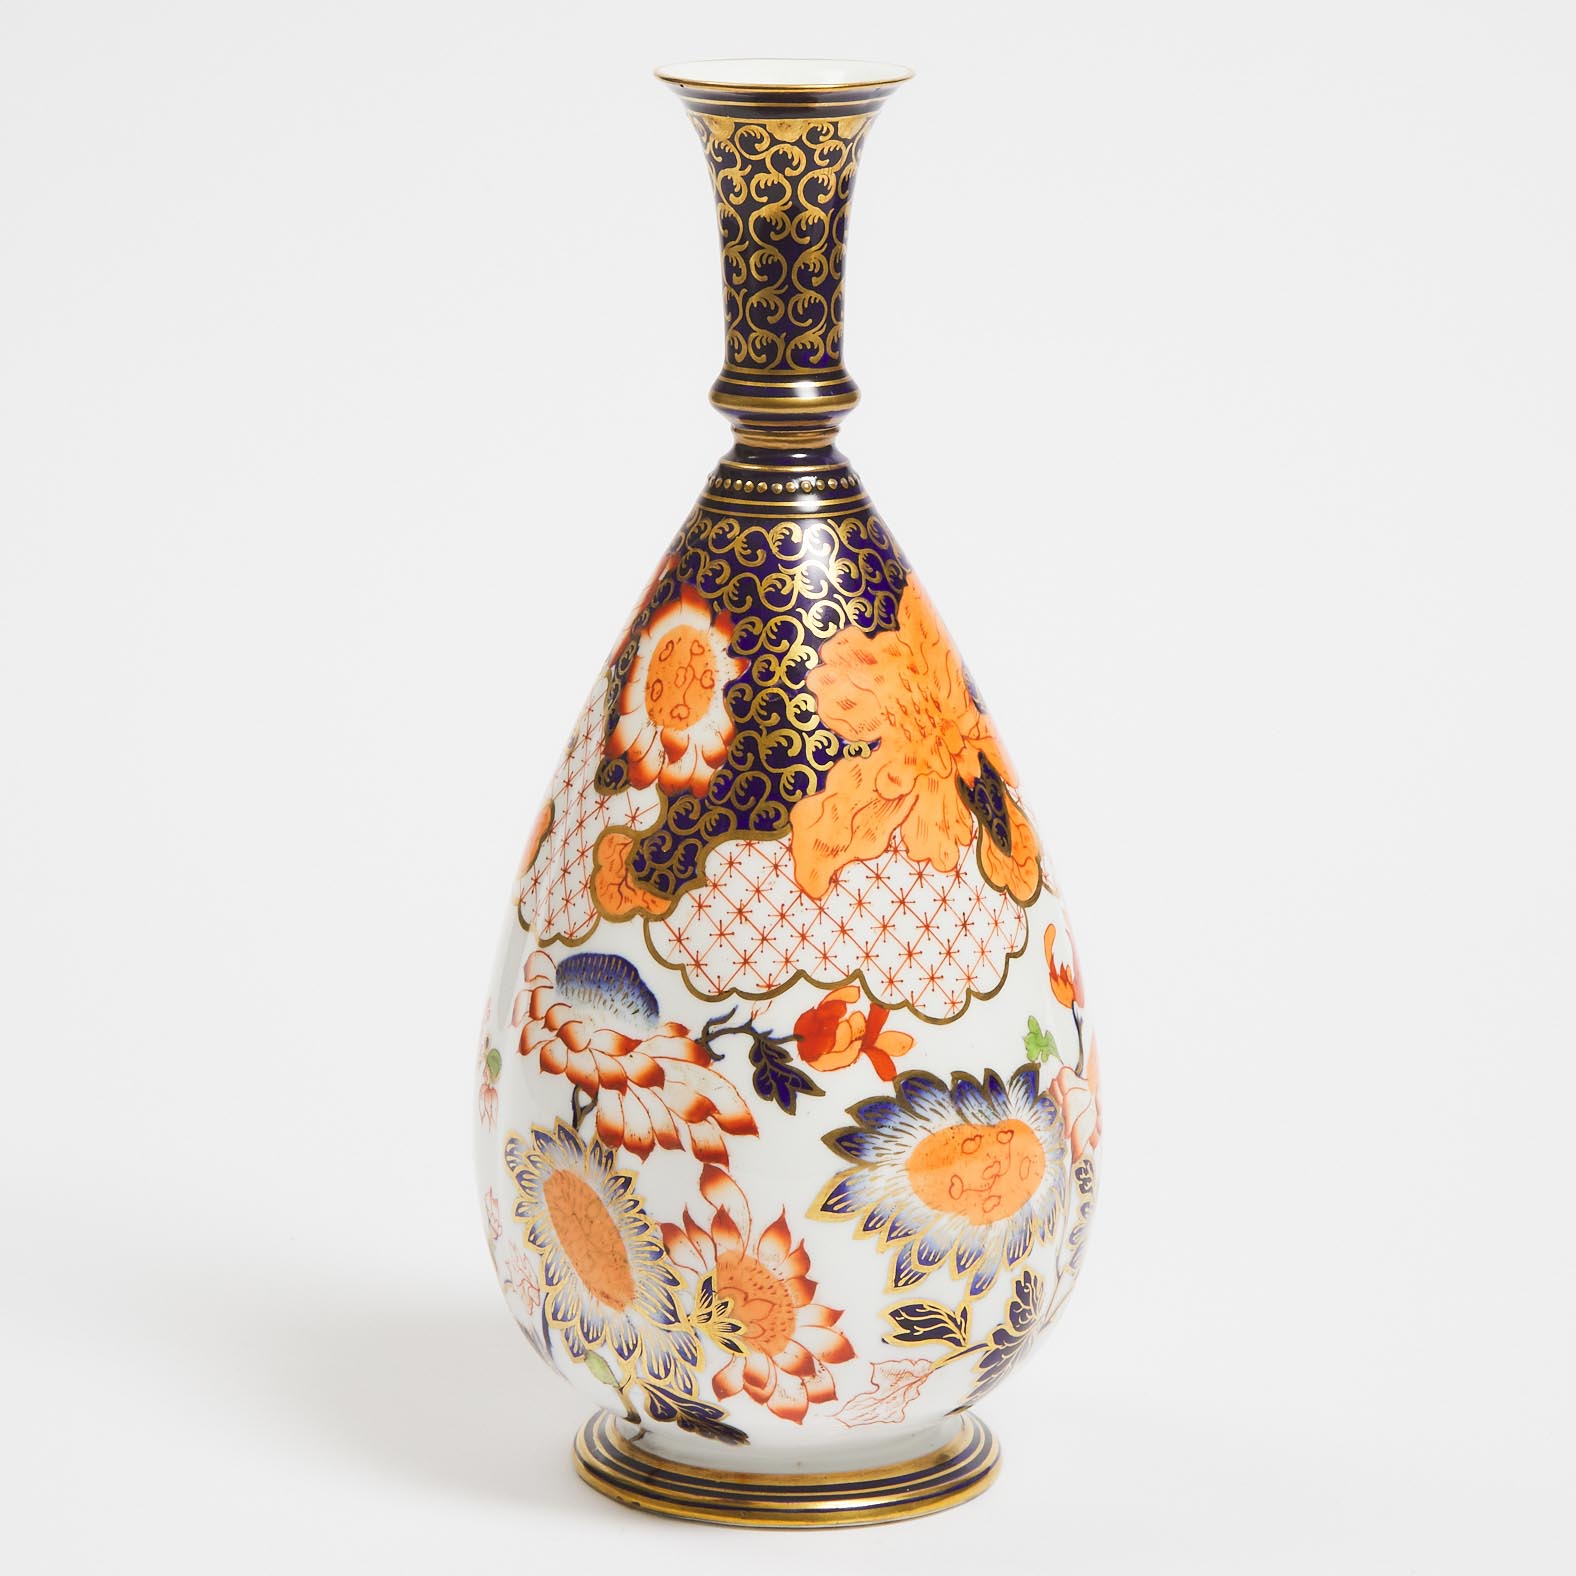 Derby Crown Porcelain Co. 'Japan' Pattern Vase, c.1889